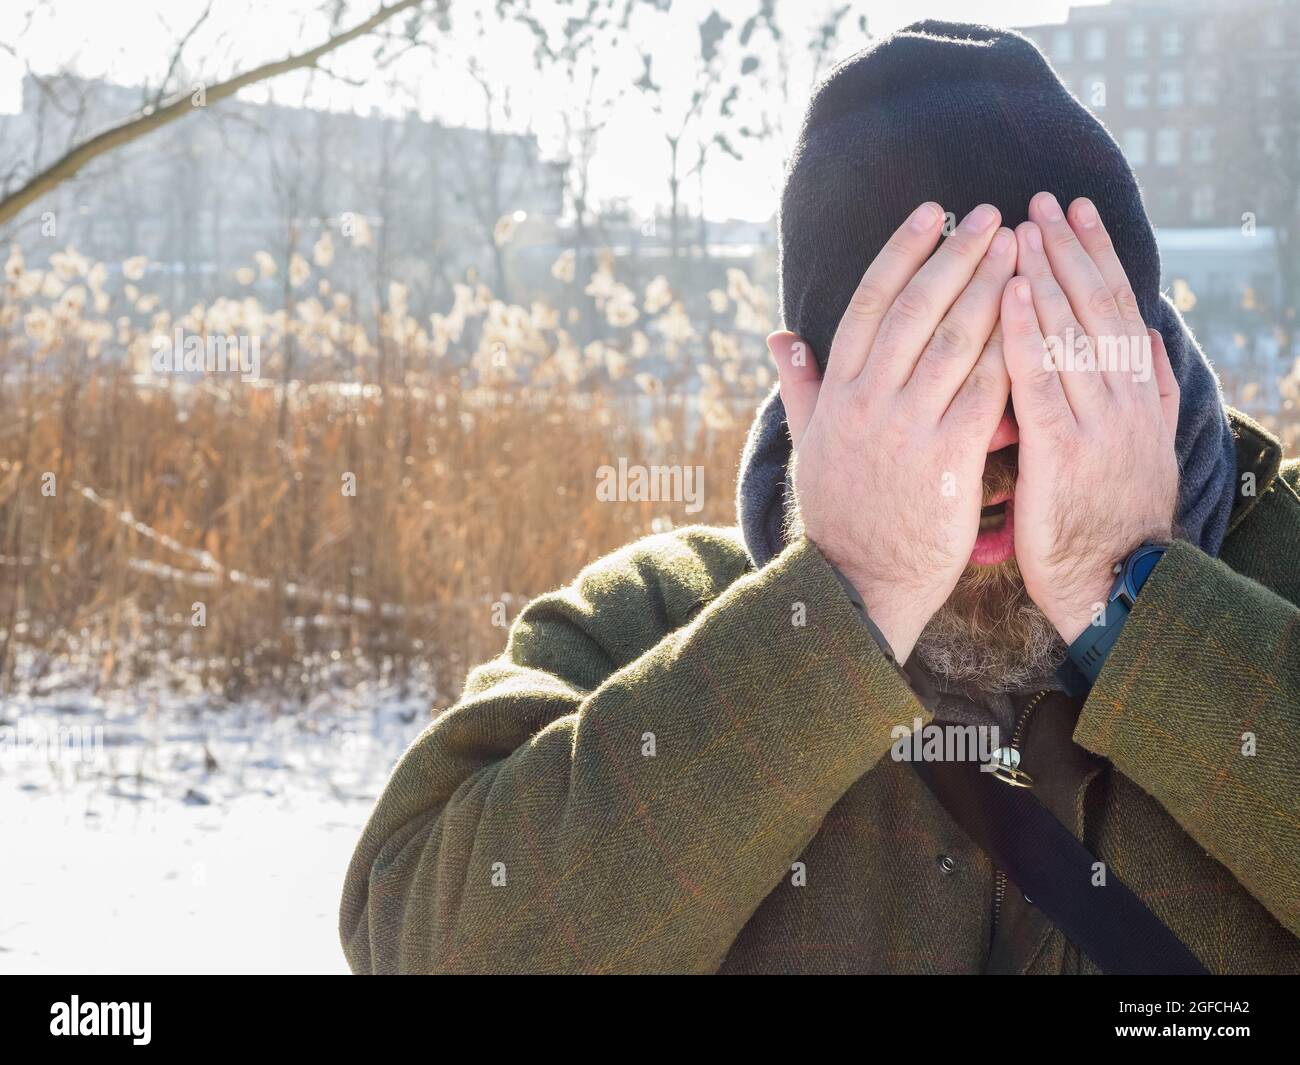 L'uomo respira nella foresta d'inverno. Uomo adulto che indossa il cappello a maglia, chiude il viso con le mani respirando aria fredda. Uomo bearded sulla passeggiata di inverno in fores nevoso Foto Stock